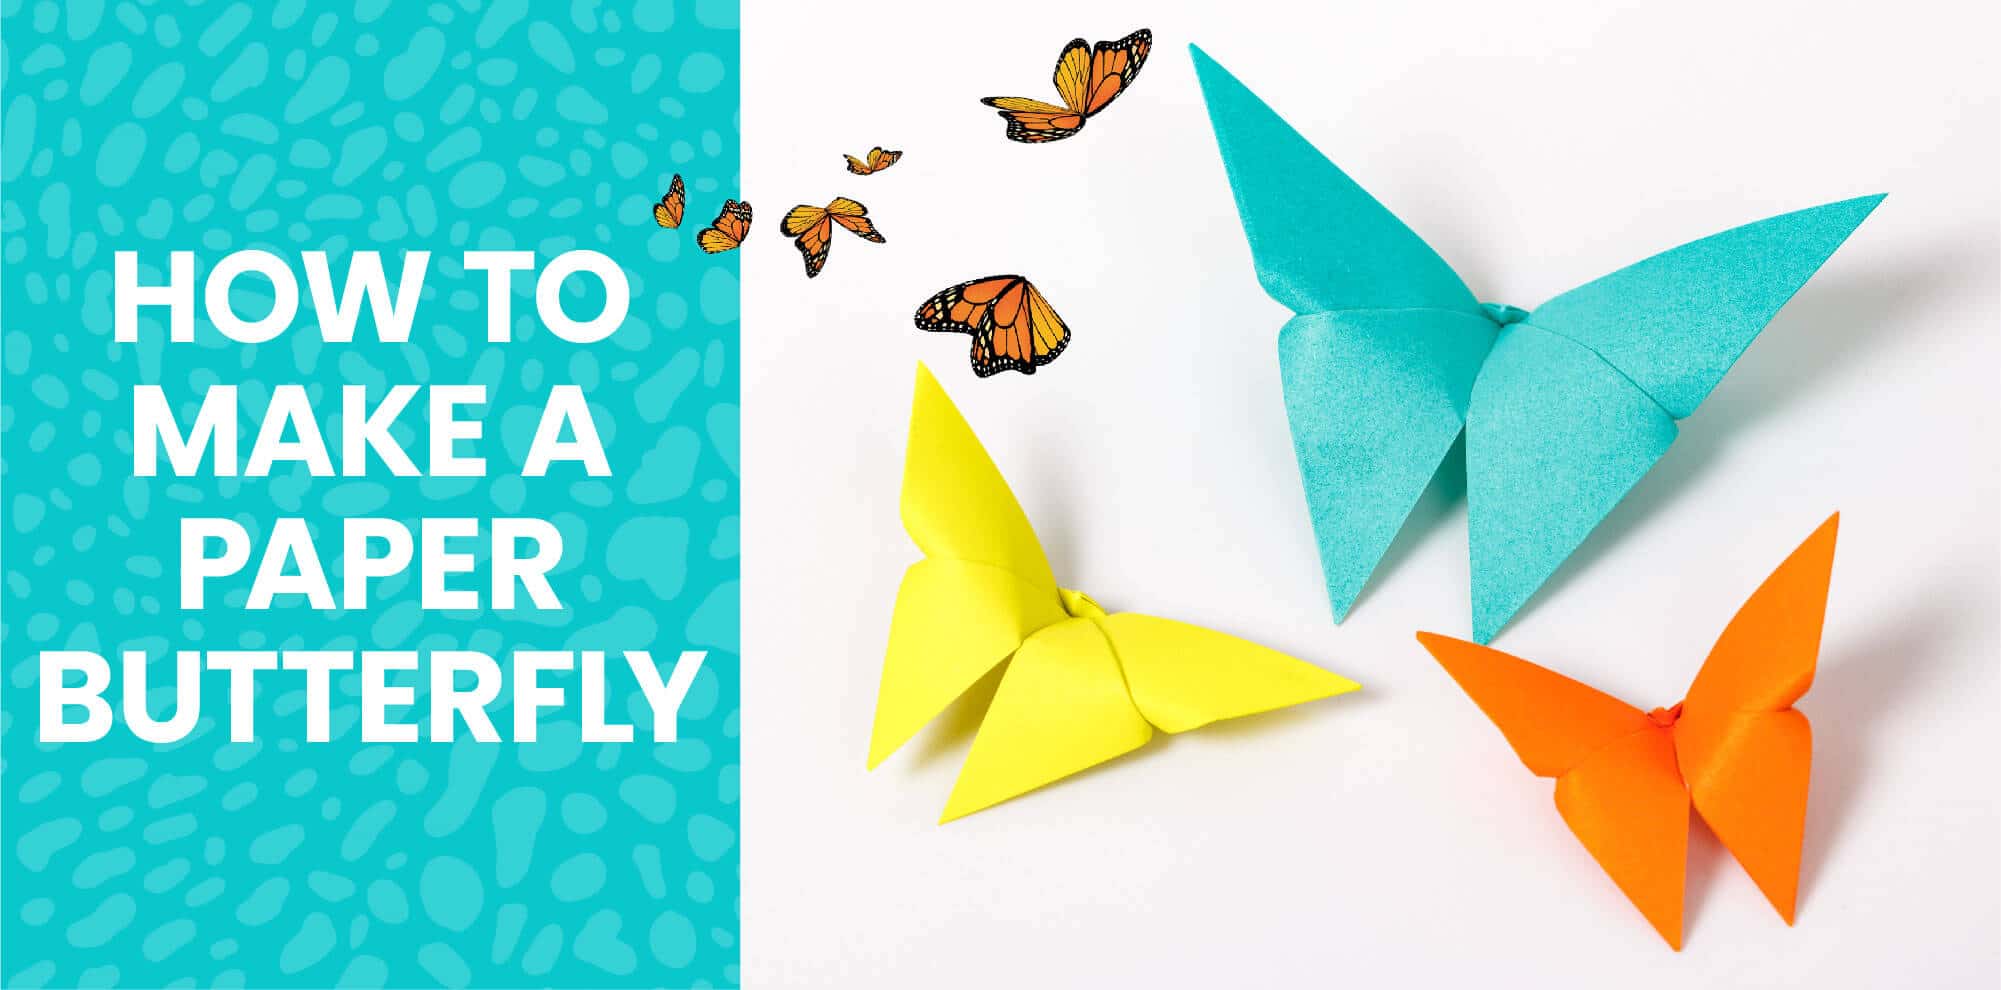 How About Orange: Make origami mini paper books